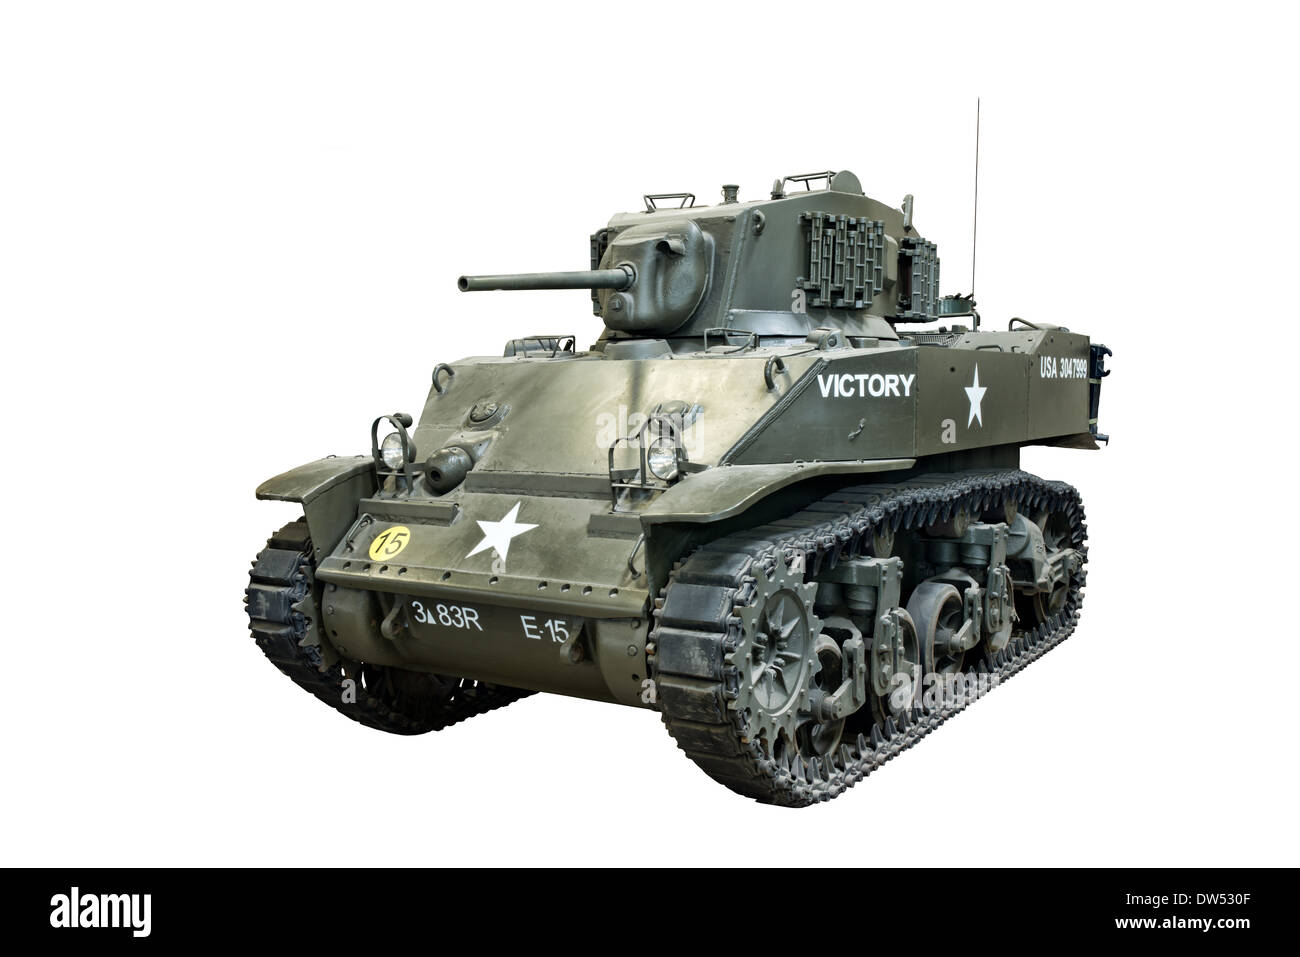 Einen Ausschnitt eines amerikanischen Stuart M3A1 leichte Panzer, verwendet ausgiebig von U.S. & Alliierten im 2. Weltkrieg Stockfoto